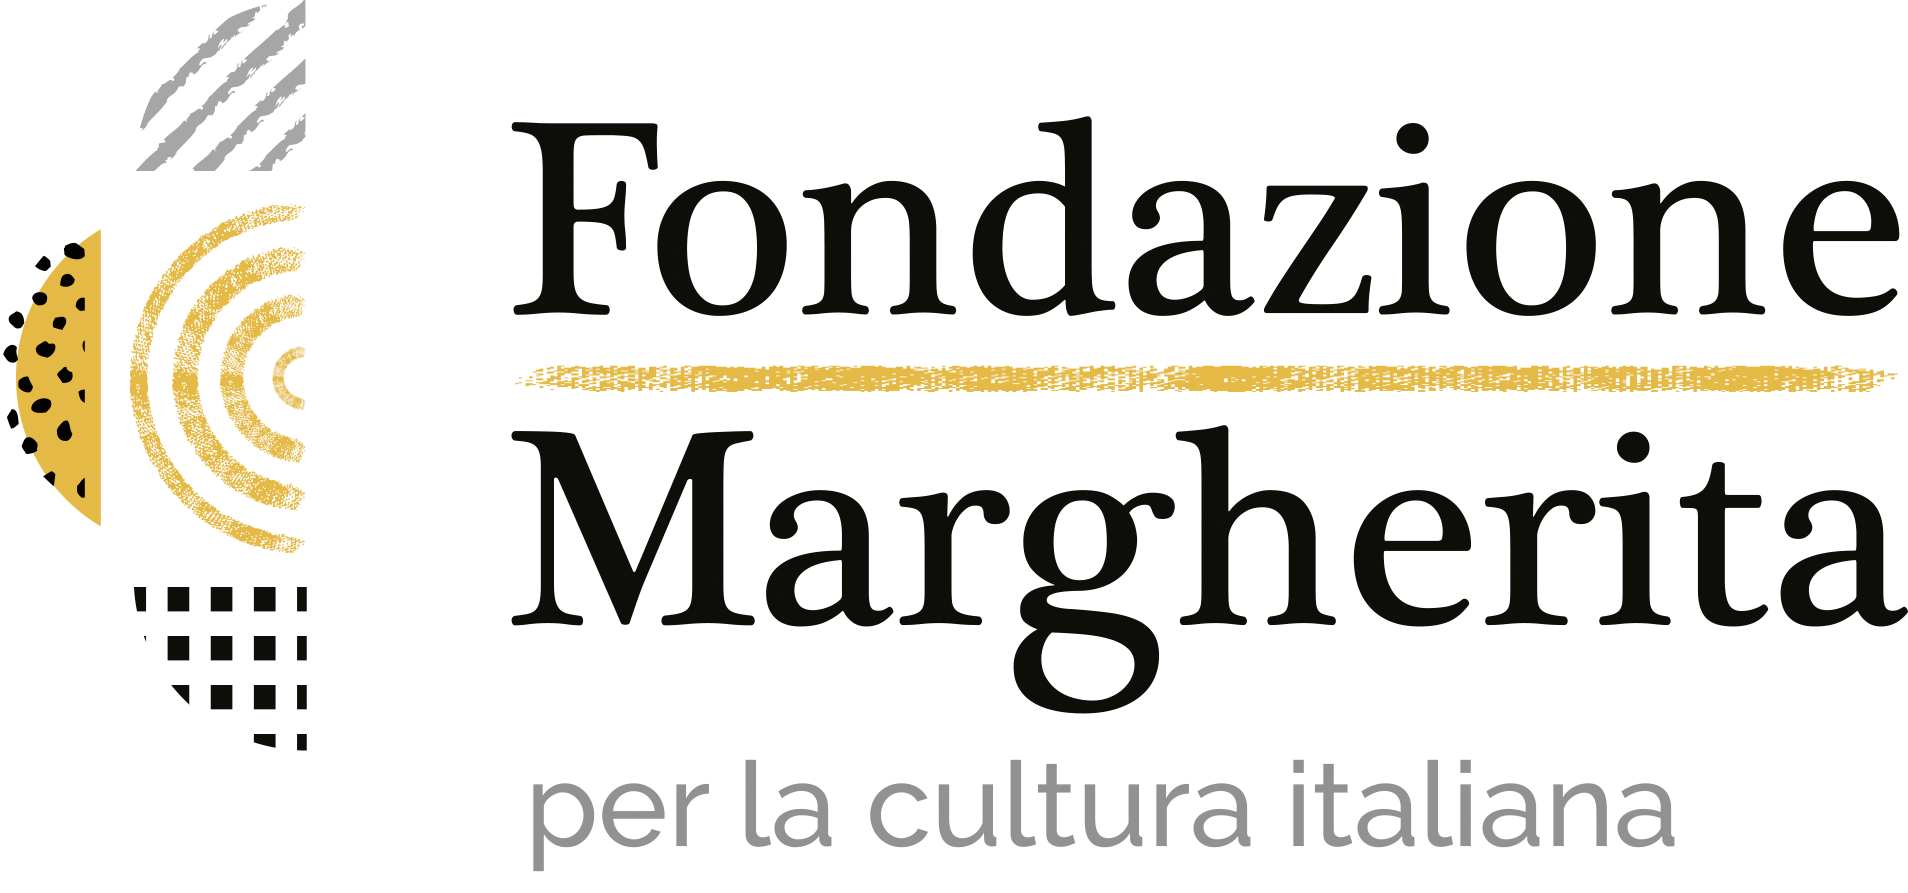 Fondazione Margherita